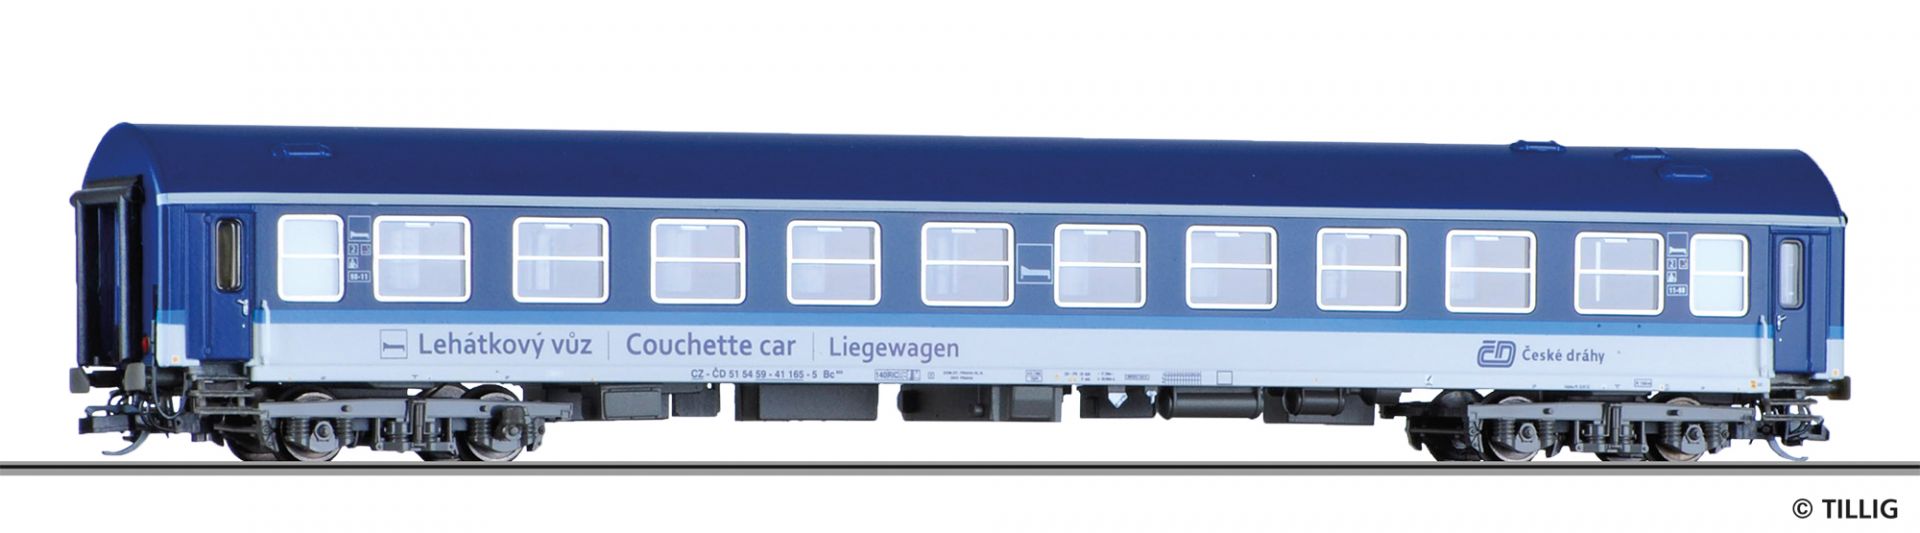 16693 | Liegewagen CD